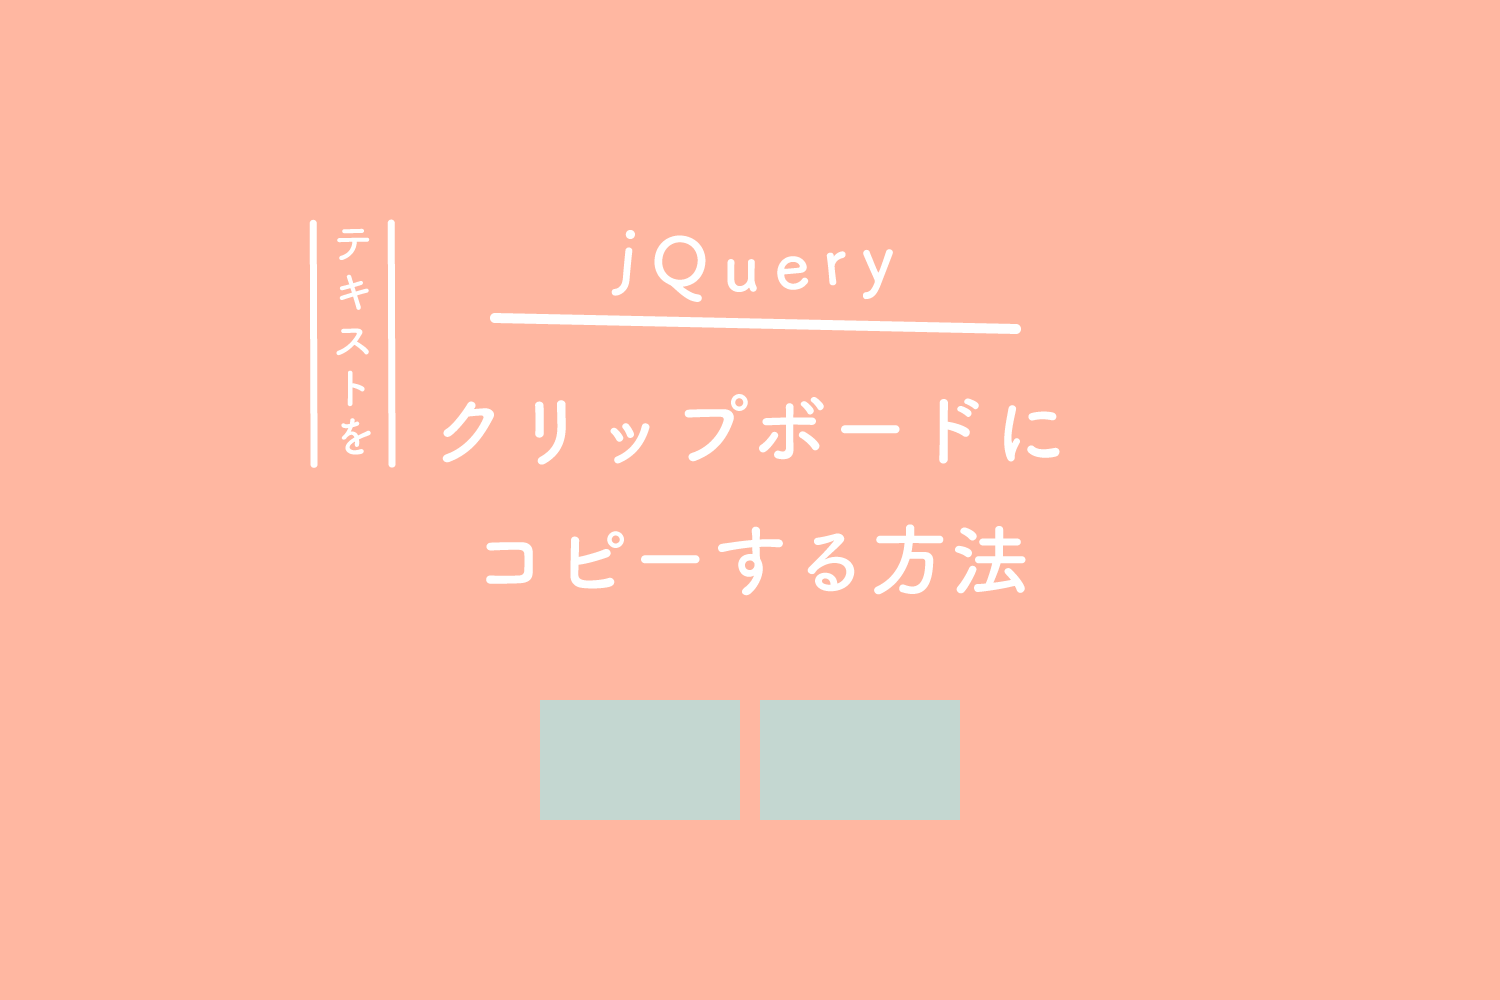 【jQuery】テキストをクリップボードにコピーする方法のあれこれ